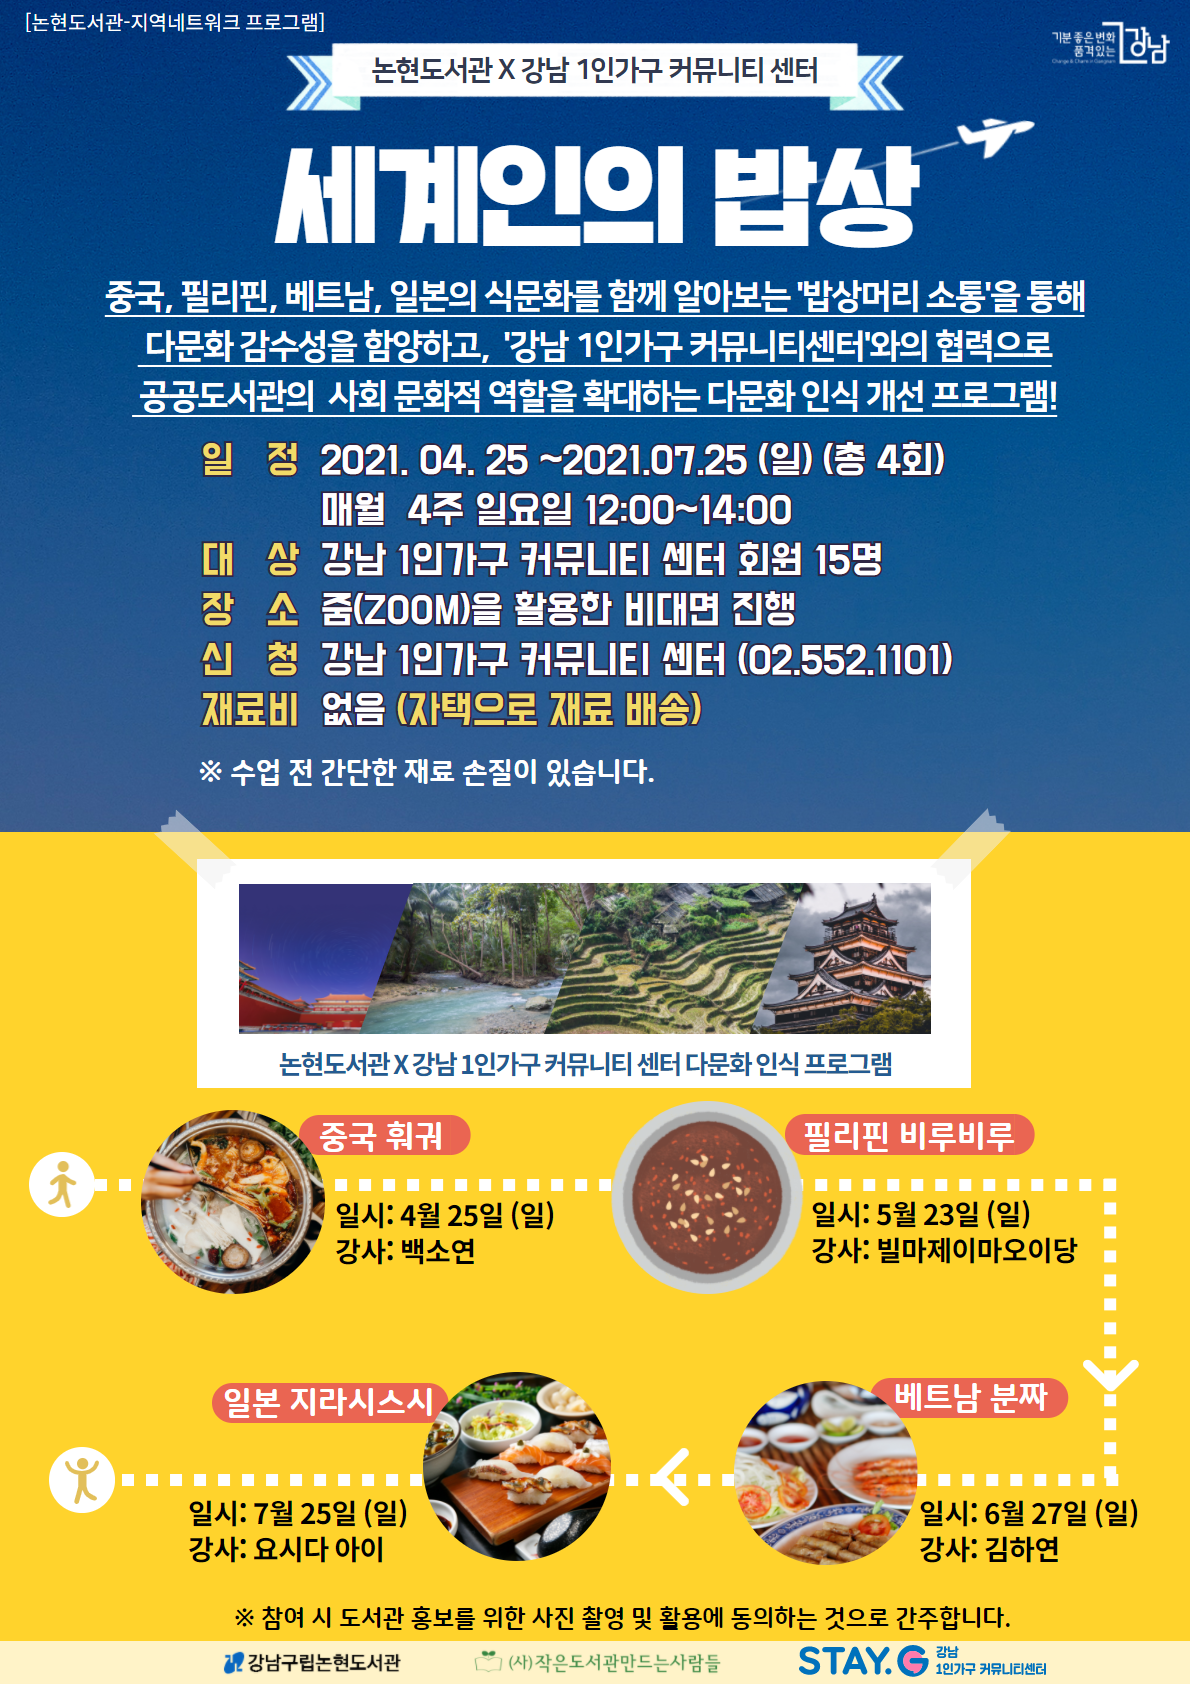 강남구립논현도서관, '세계인의 밥상' 포스터